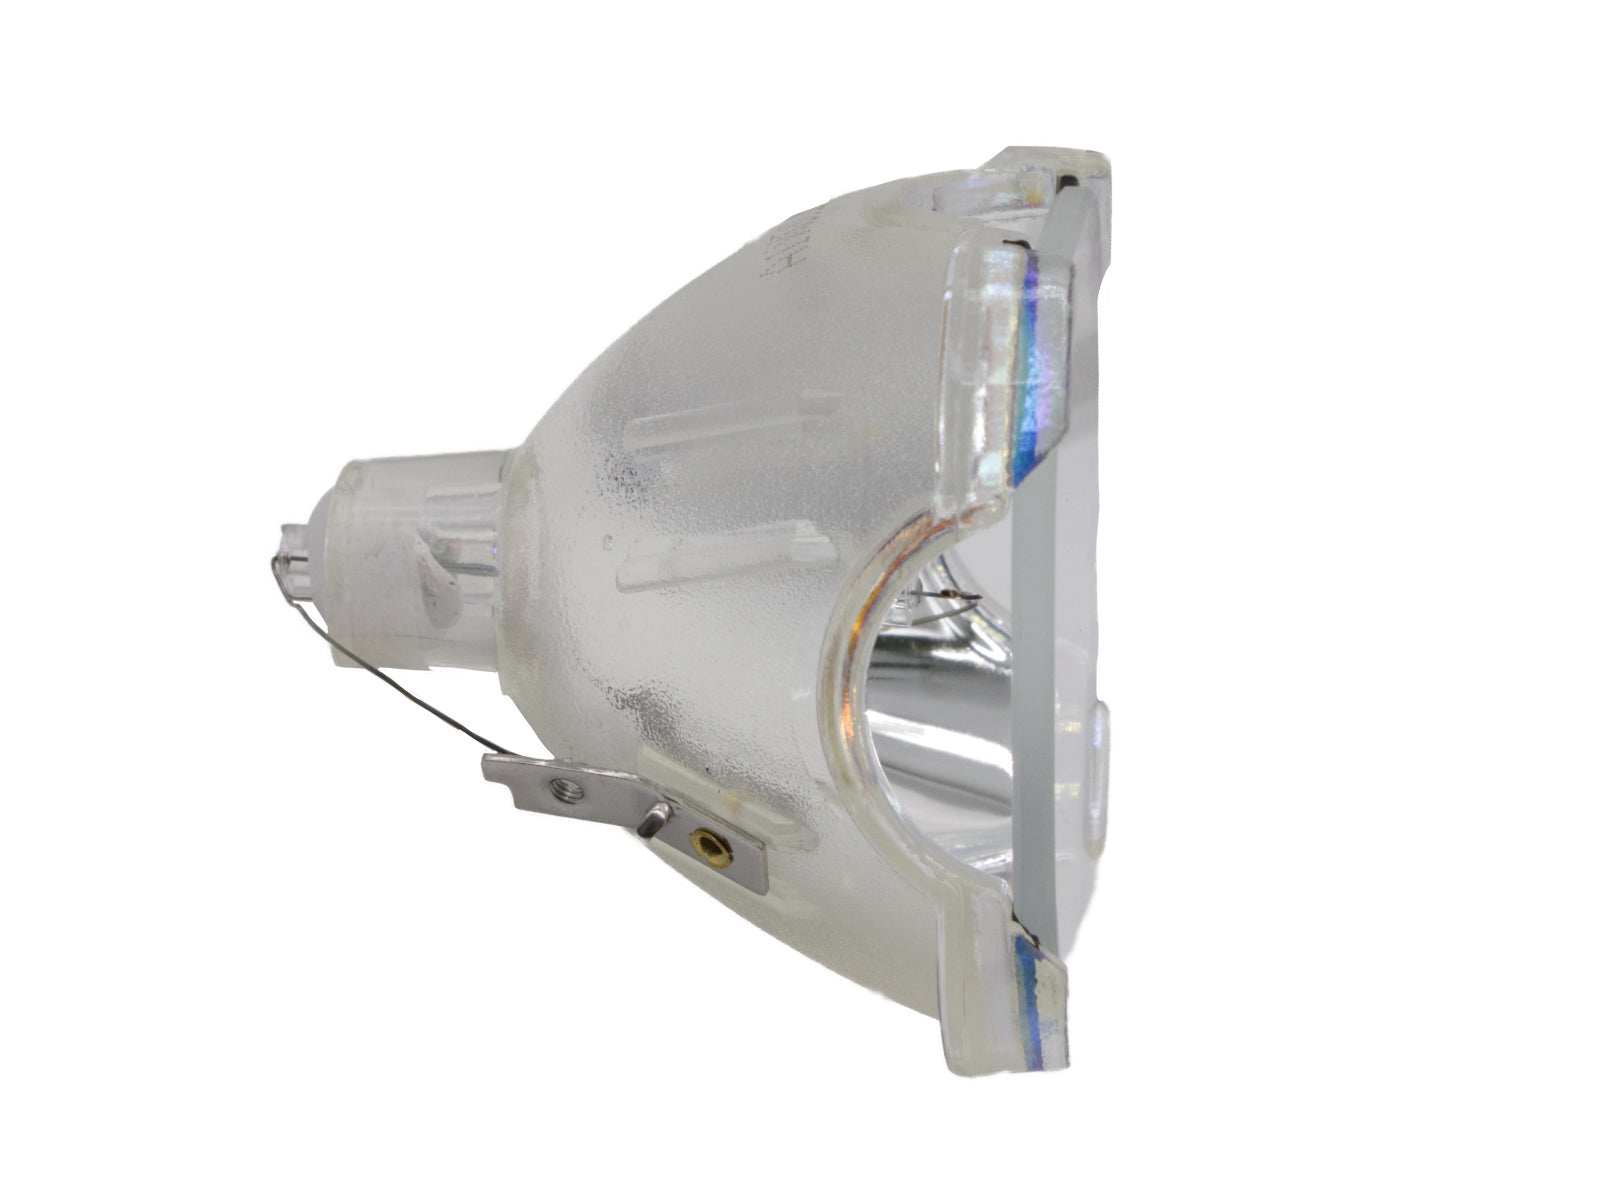 azurano Beamerlampe BLB44 Ersatz für PHILIPS UHP 200W 1.0 P22 Ersatzlampe für diverse Projektoren von BOXLIGHT, EPSON, SANYO, SONY, 200W - Bild 2